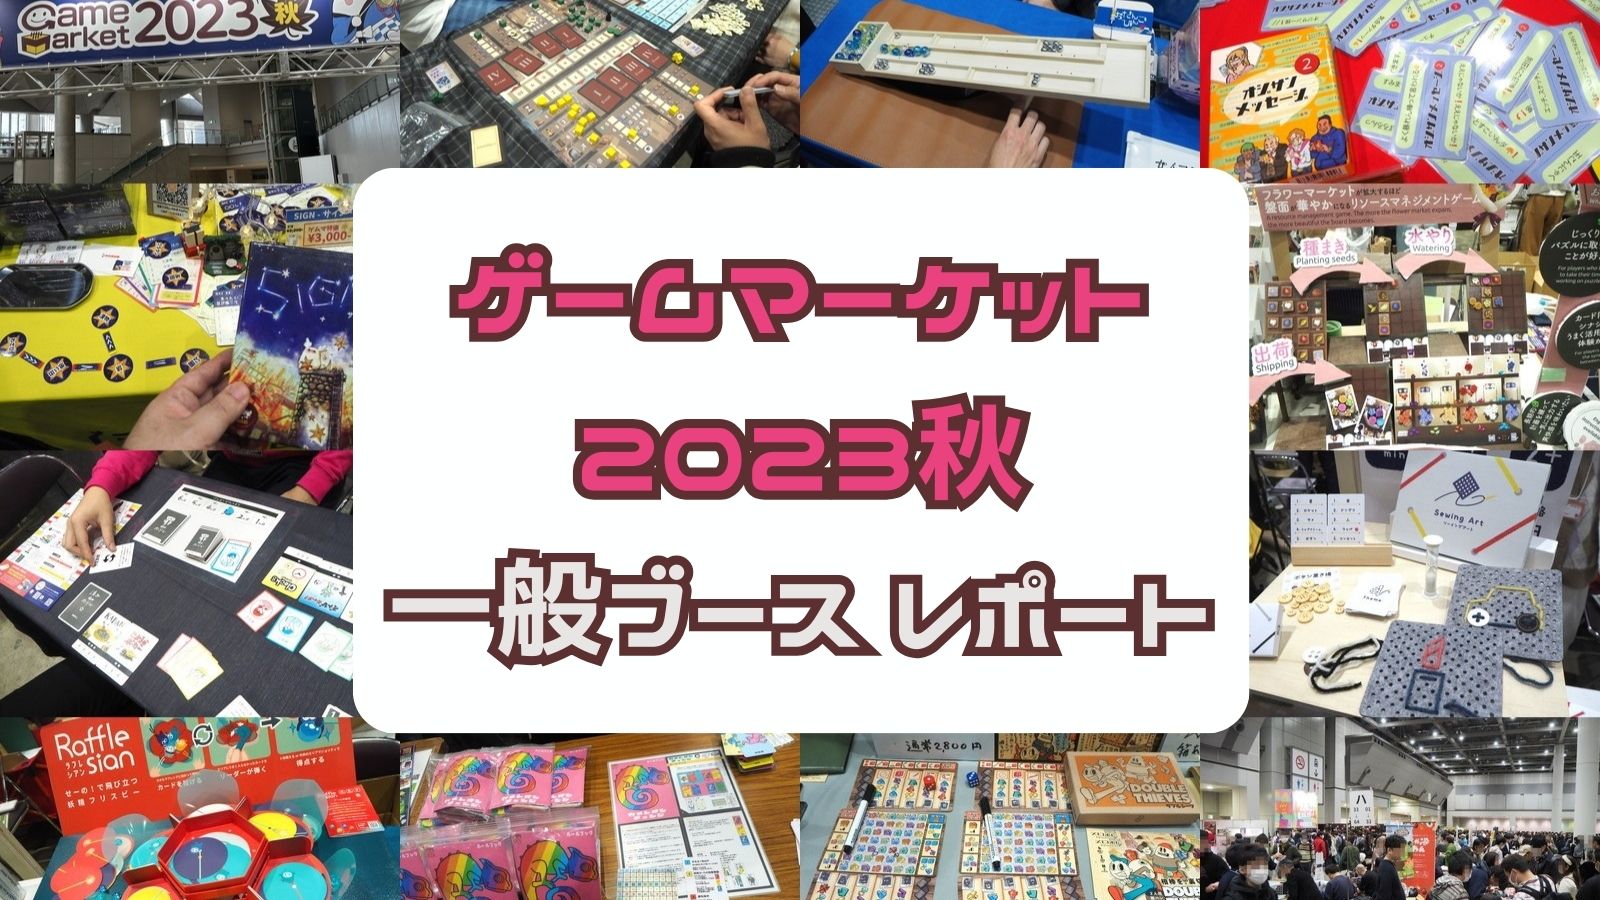 ☆ クロノビブリオティカ ☆ HQ GAMES ☆ゲームマーケット ボードゲームボードゲーム